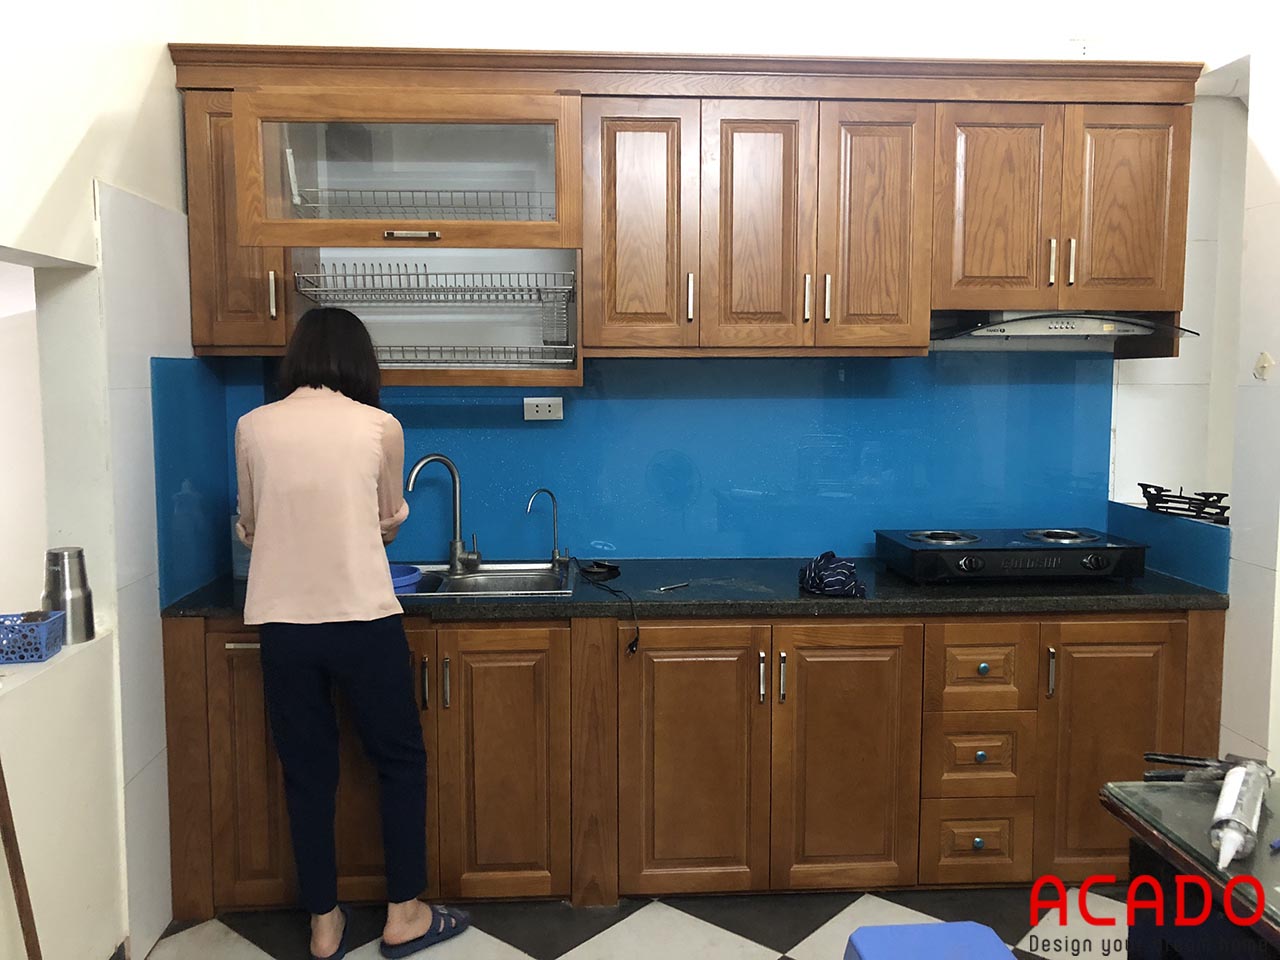 Tủ bếp kính màu xanh dương sang trọng tại ACADO